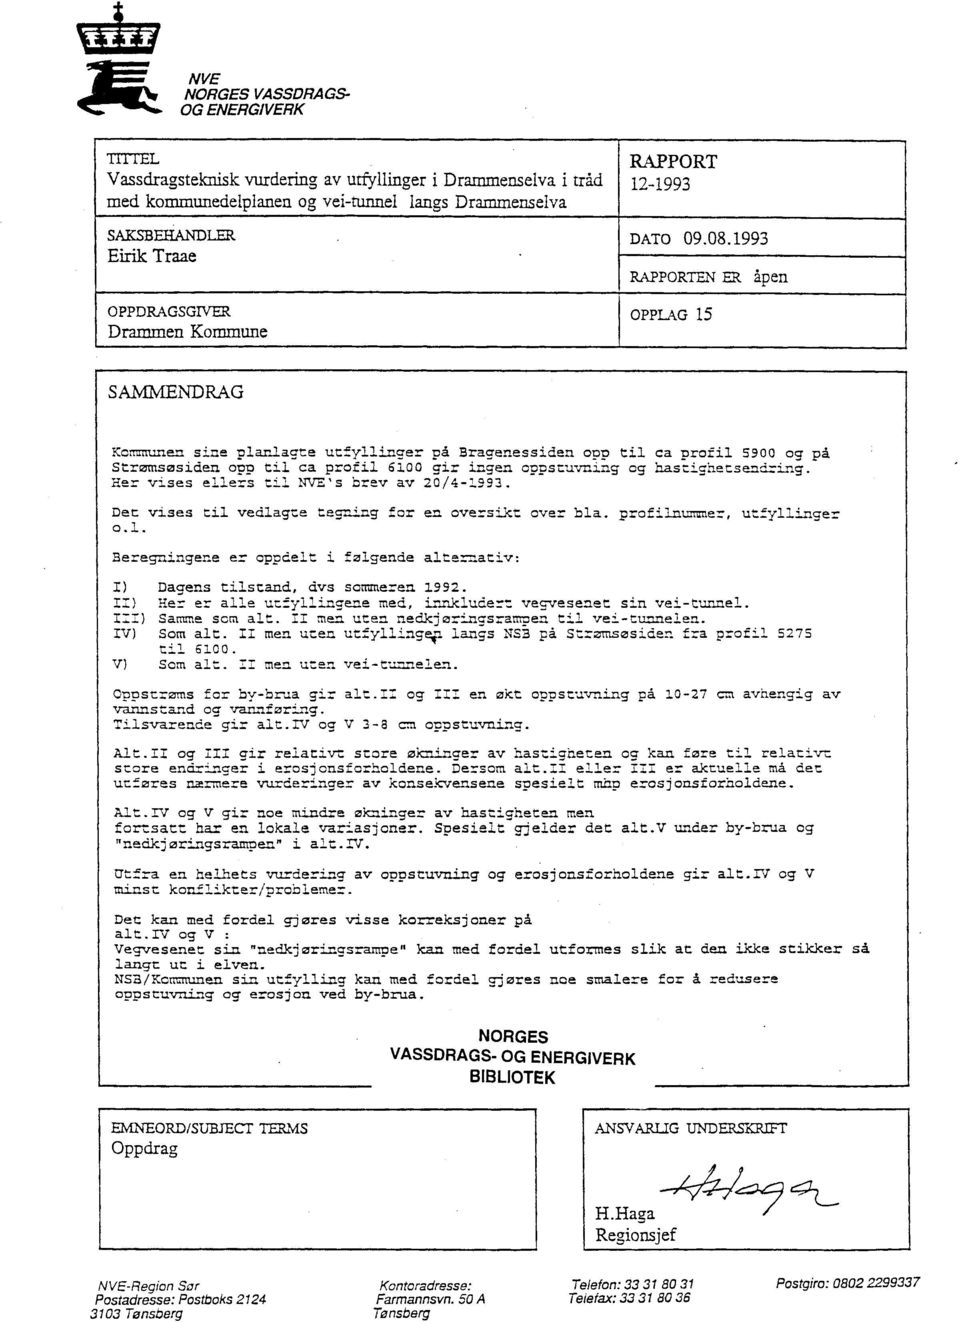 1993 RAPPORTENER åpen OPPLAG15 SAMMENDRAG Kommunen sine planlagte utfyllinger på Bragenessiden opp til ca profil 5900 og på Strzmsøsidan OVD til ca profil 6100 gir ingen oonstuvning og